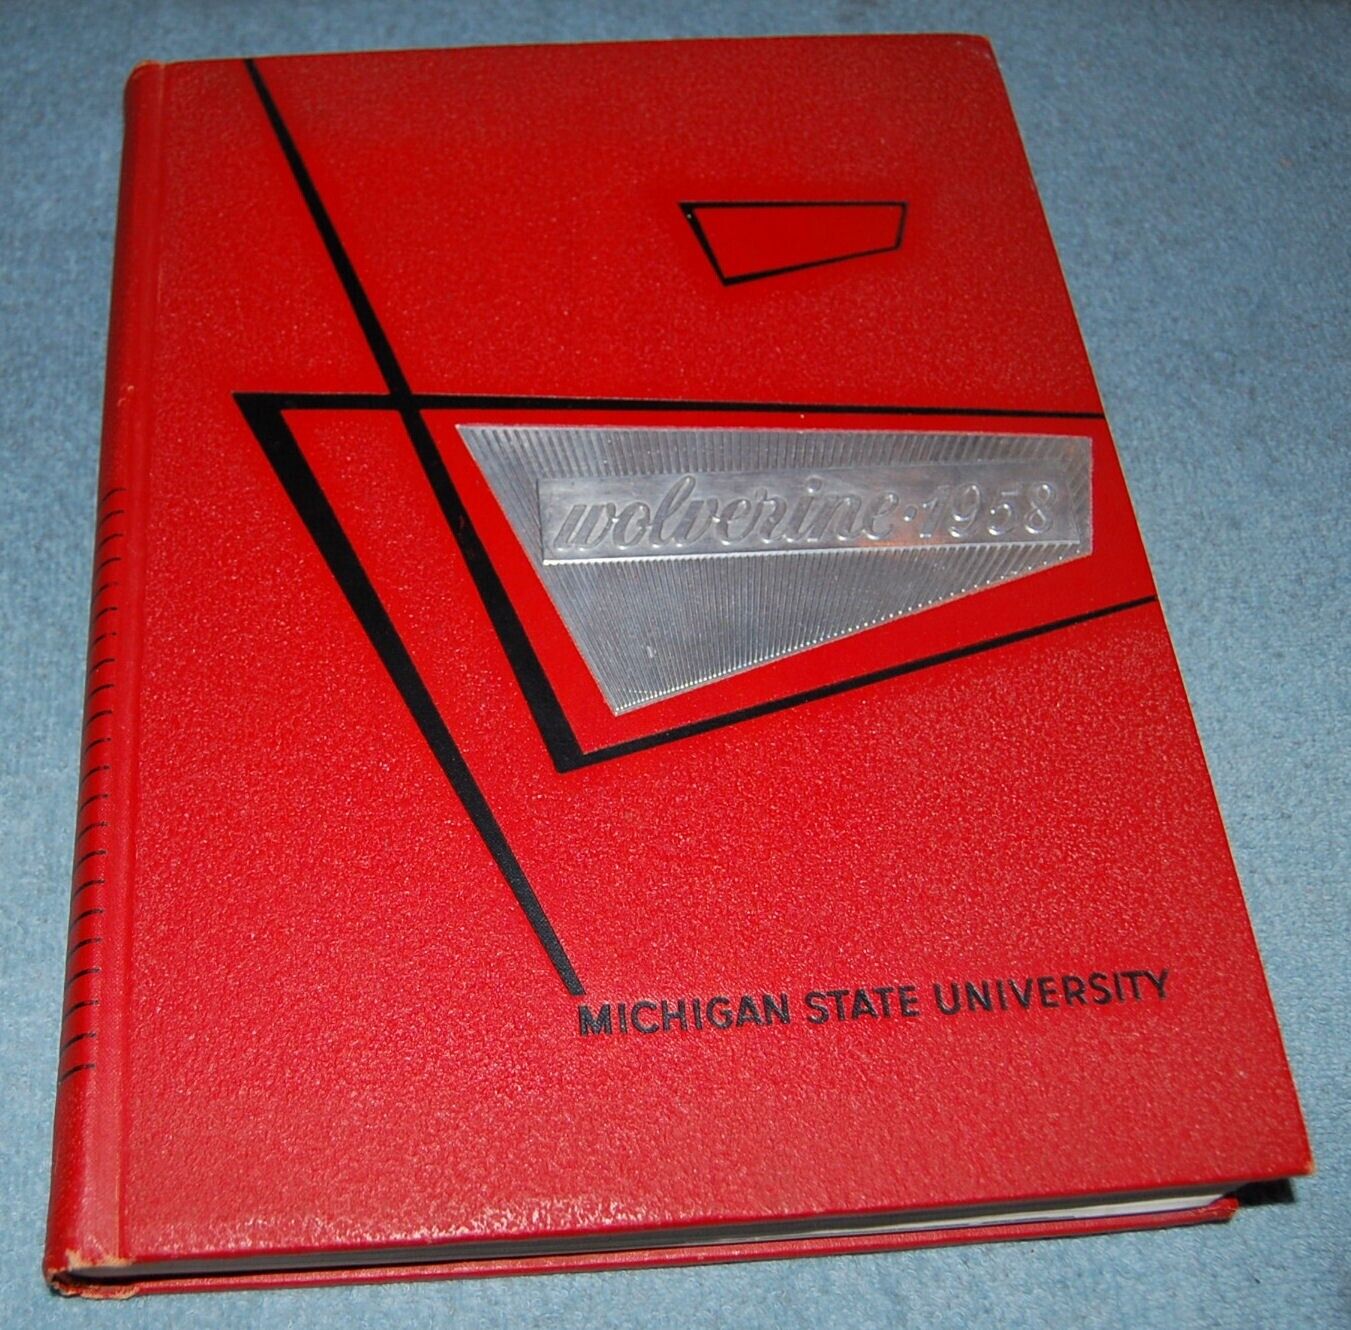 Michigan State University 1958 Yearbook (Wolverine), East Lansing Michigan